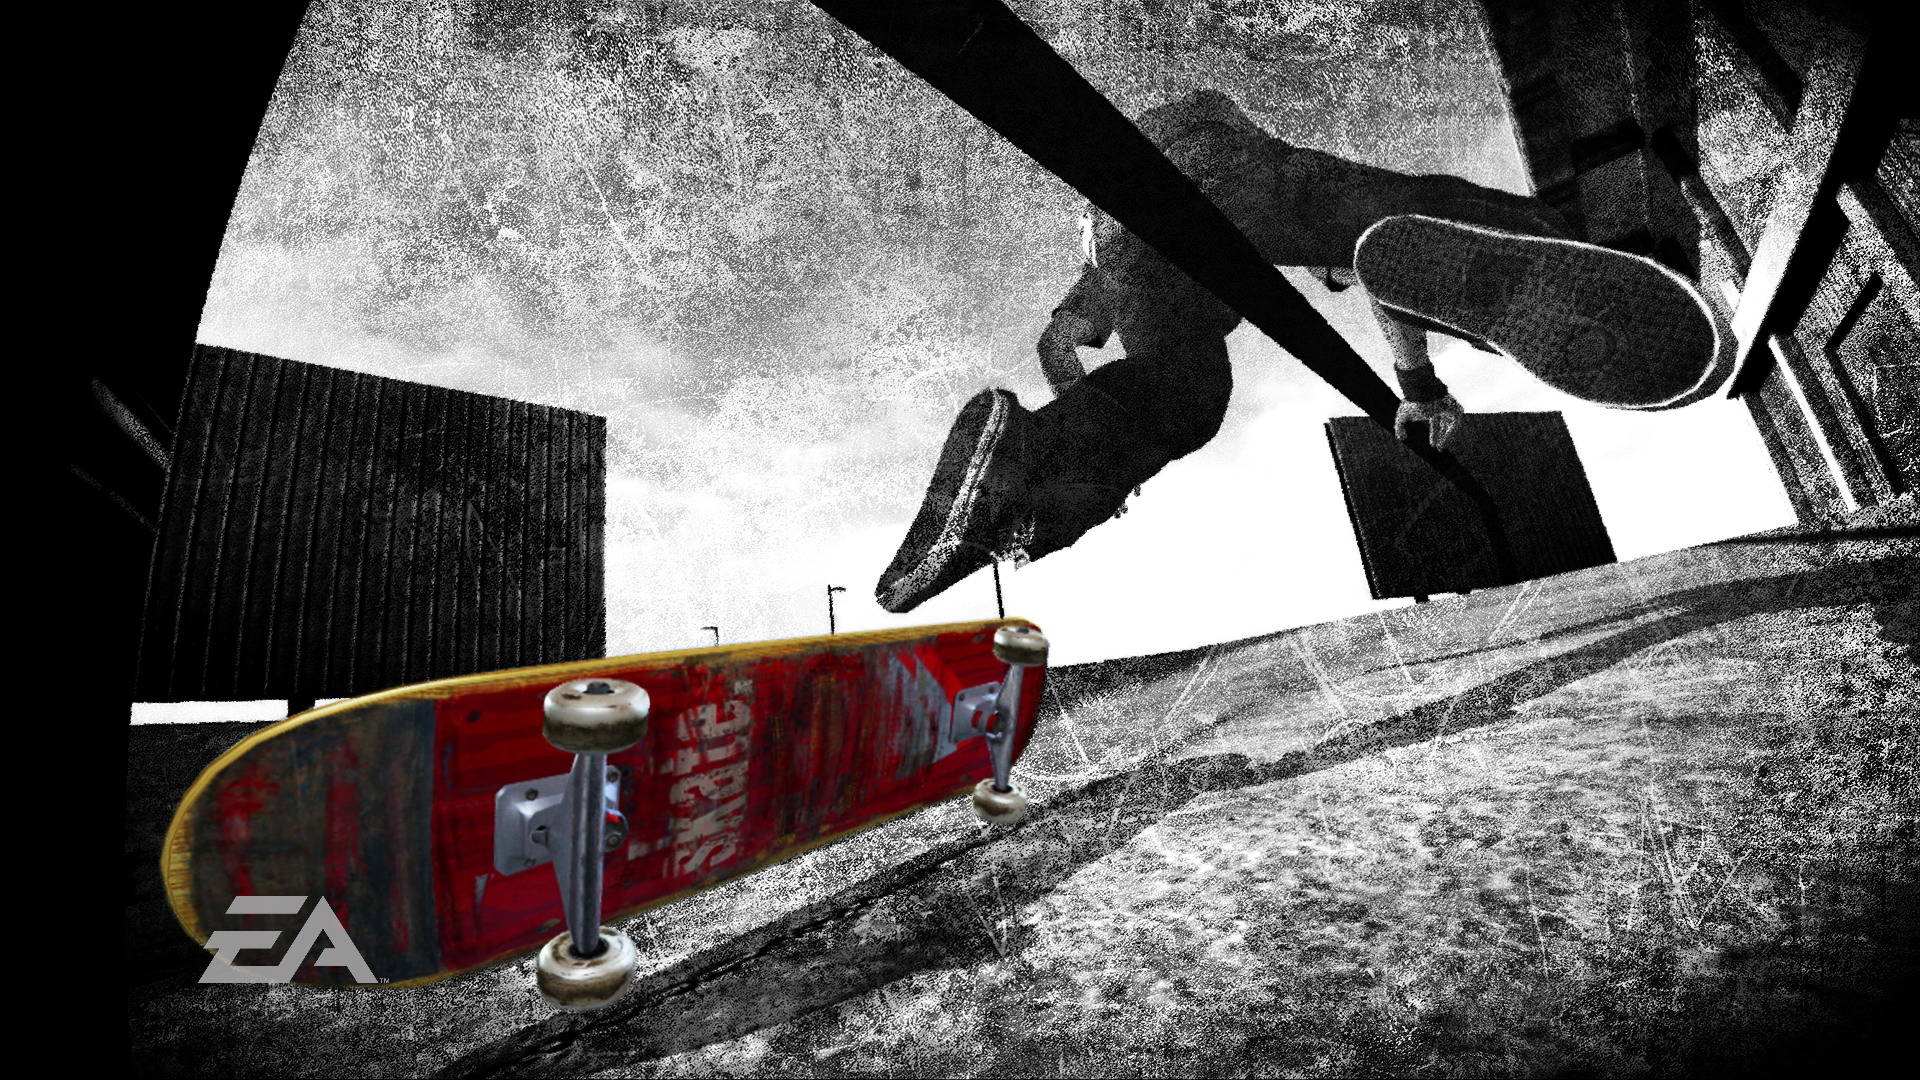 Skateboard Wallpaper for Desktop - WallpaperSafari